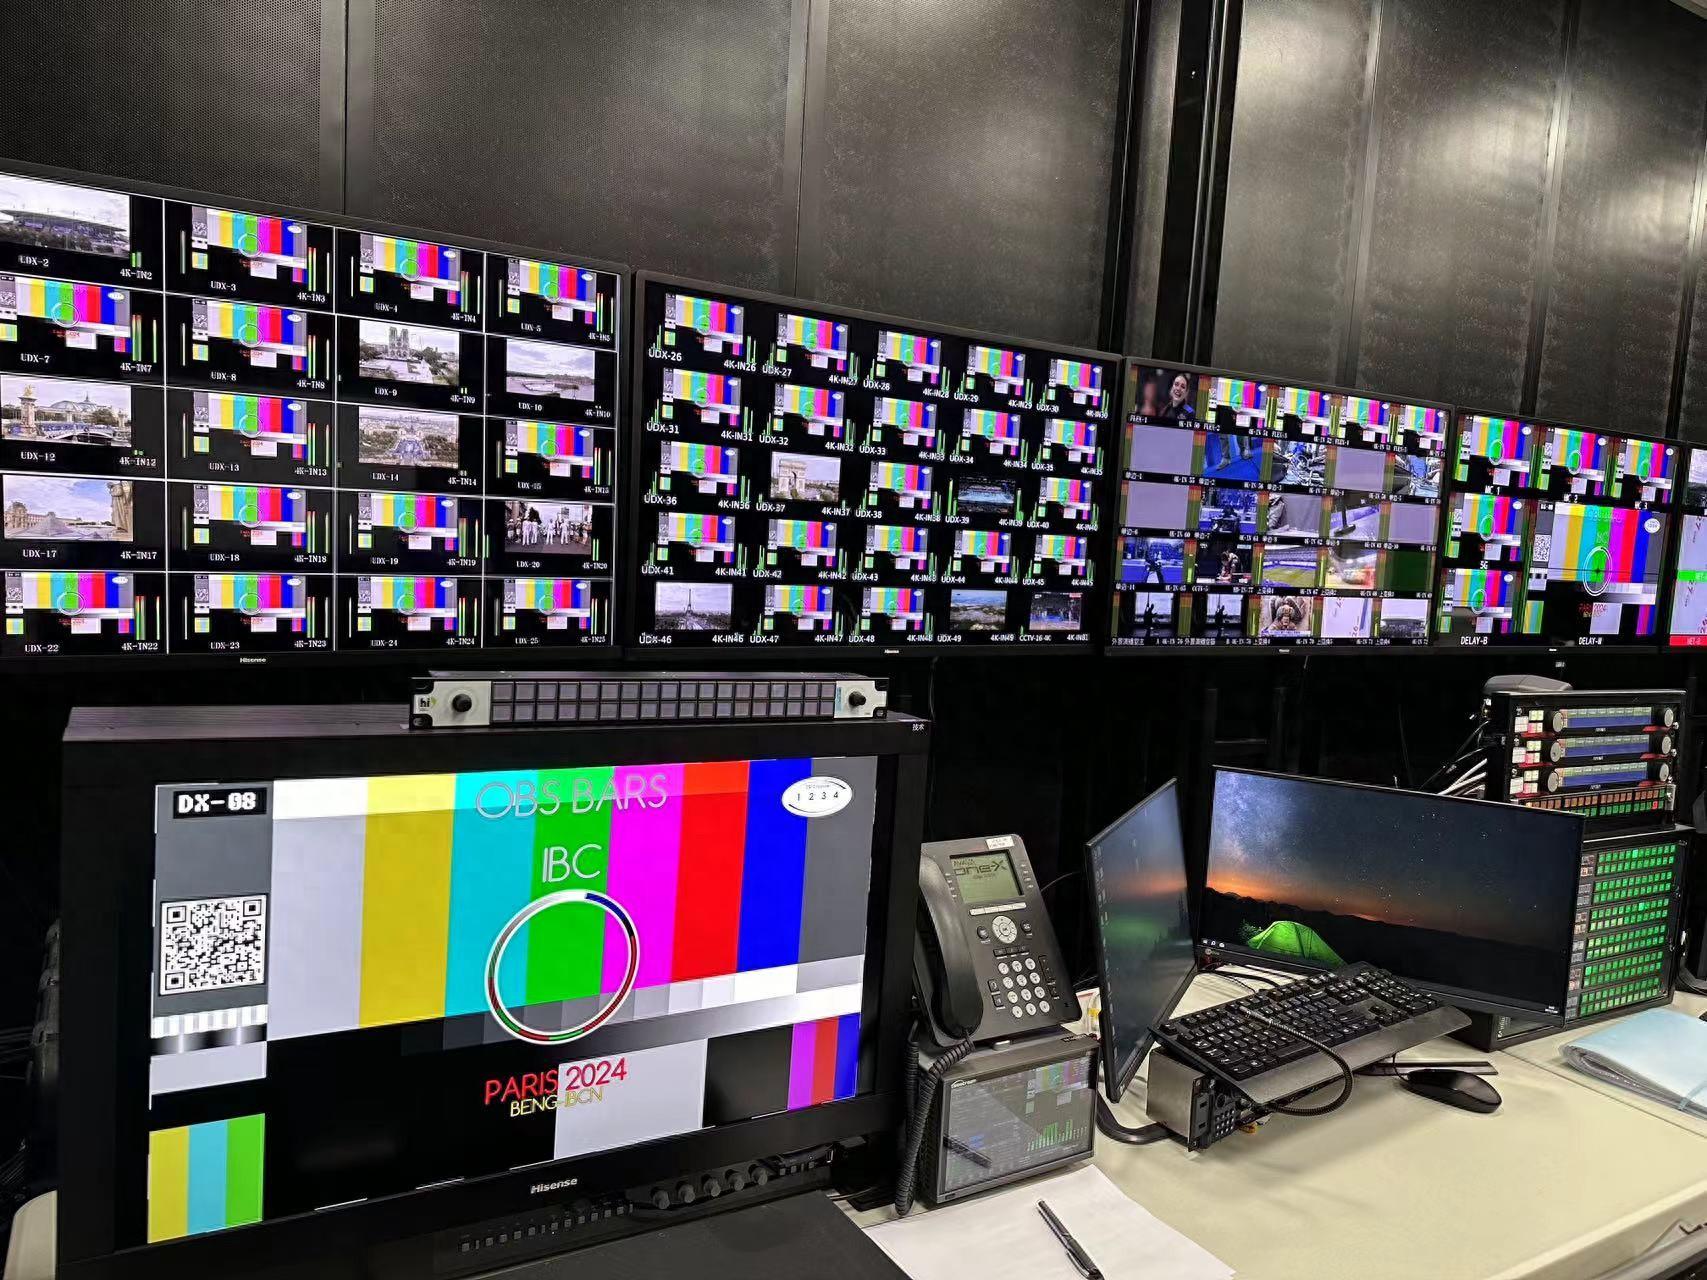 中国科技闪耀巴黎 海信监视器助力央视直播奥运